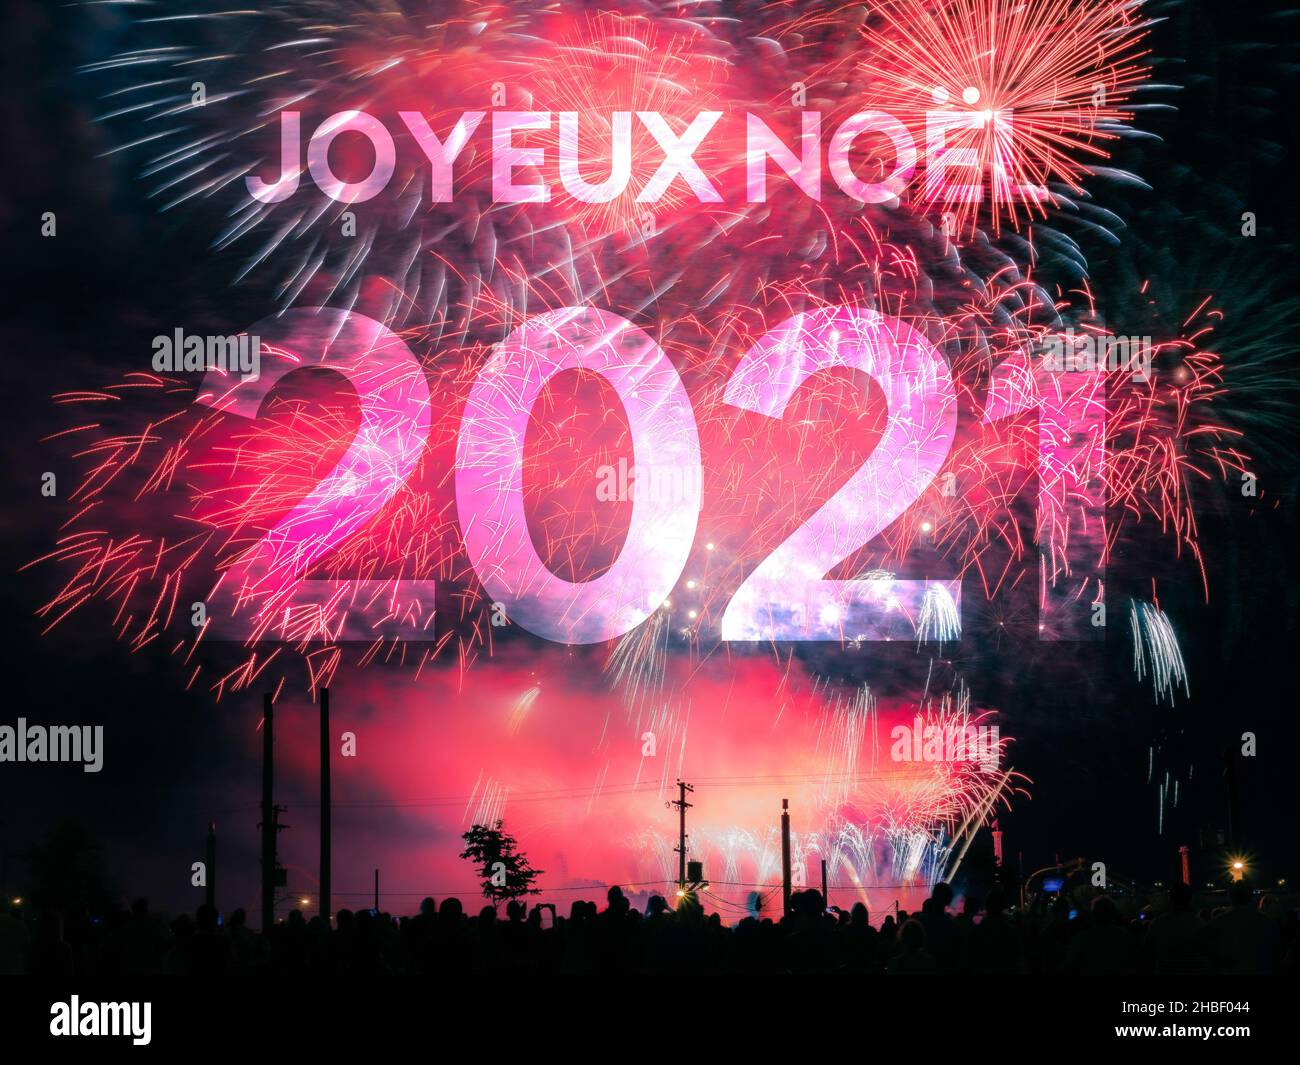 Joyeux Noel Karte auf einem roten Feuerwerk Hintergrund Stockfoto